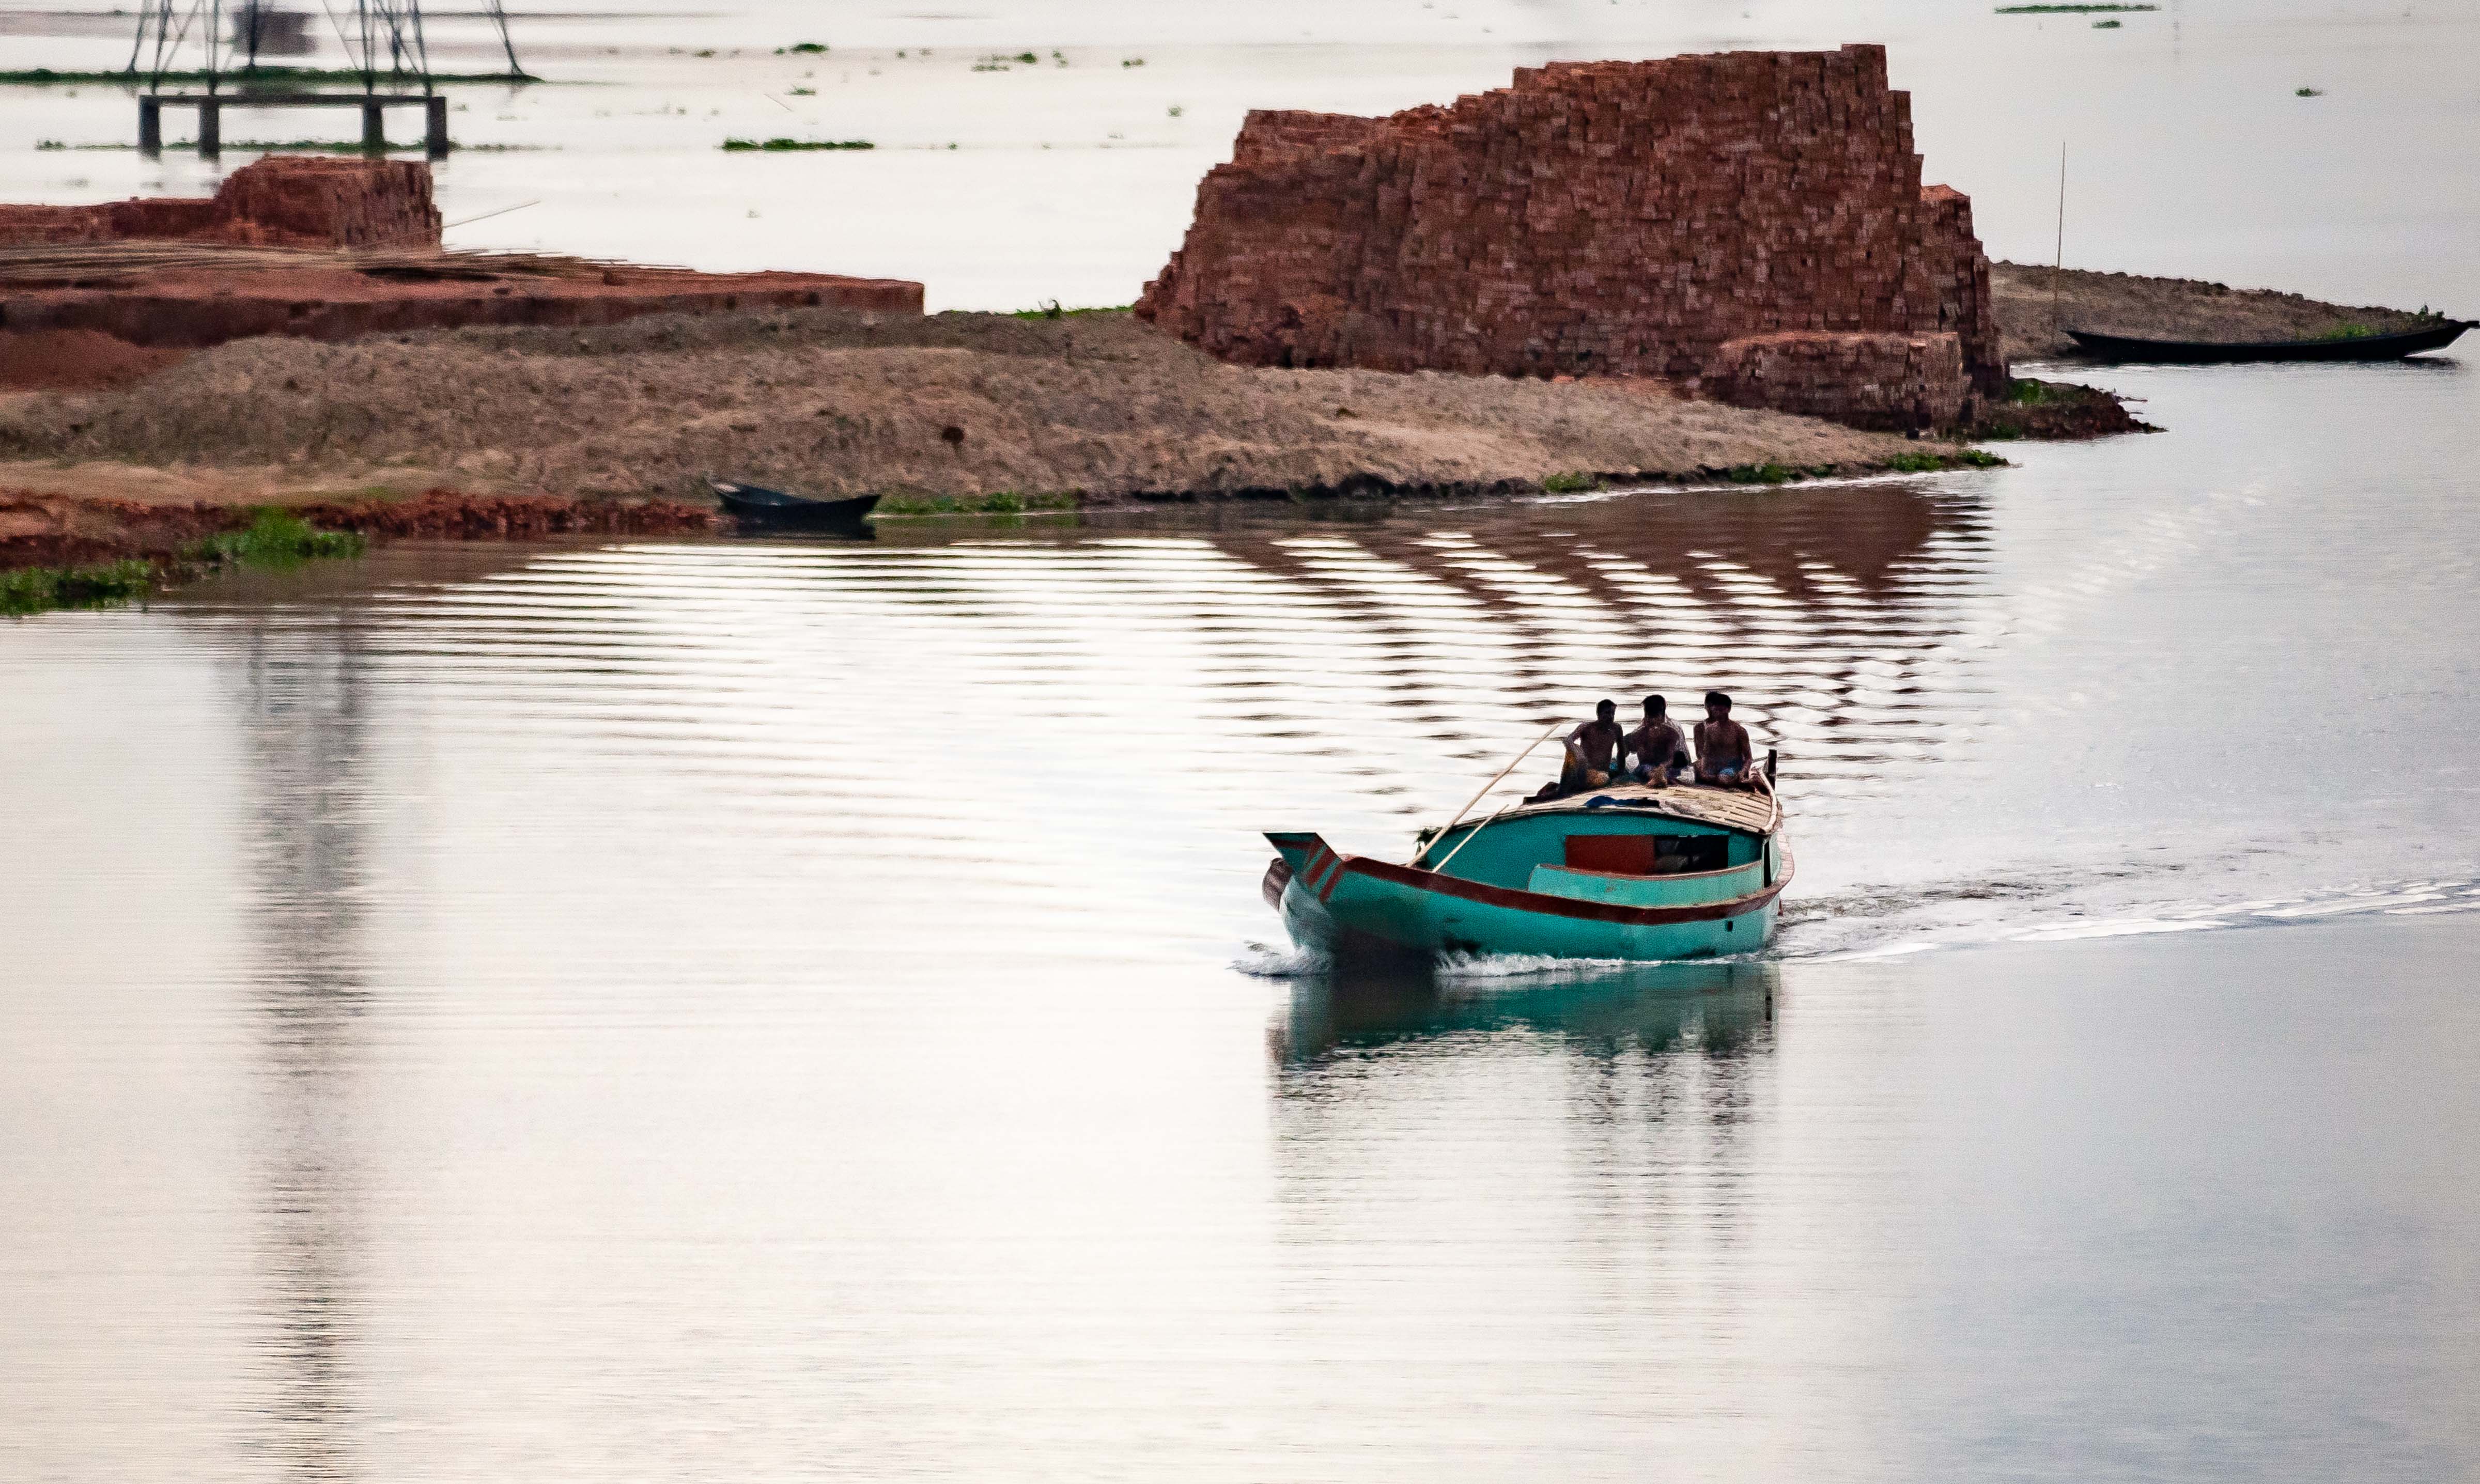 Bangladesh, Brahmanbaria Prov, River Boat, 2009, IMG 8519